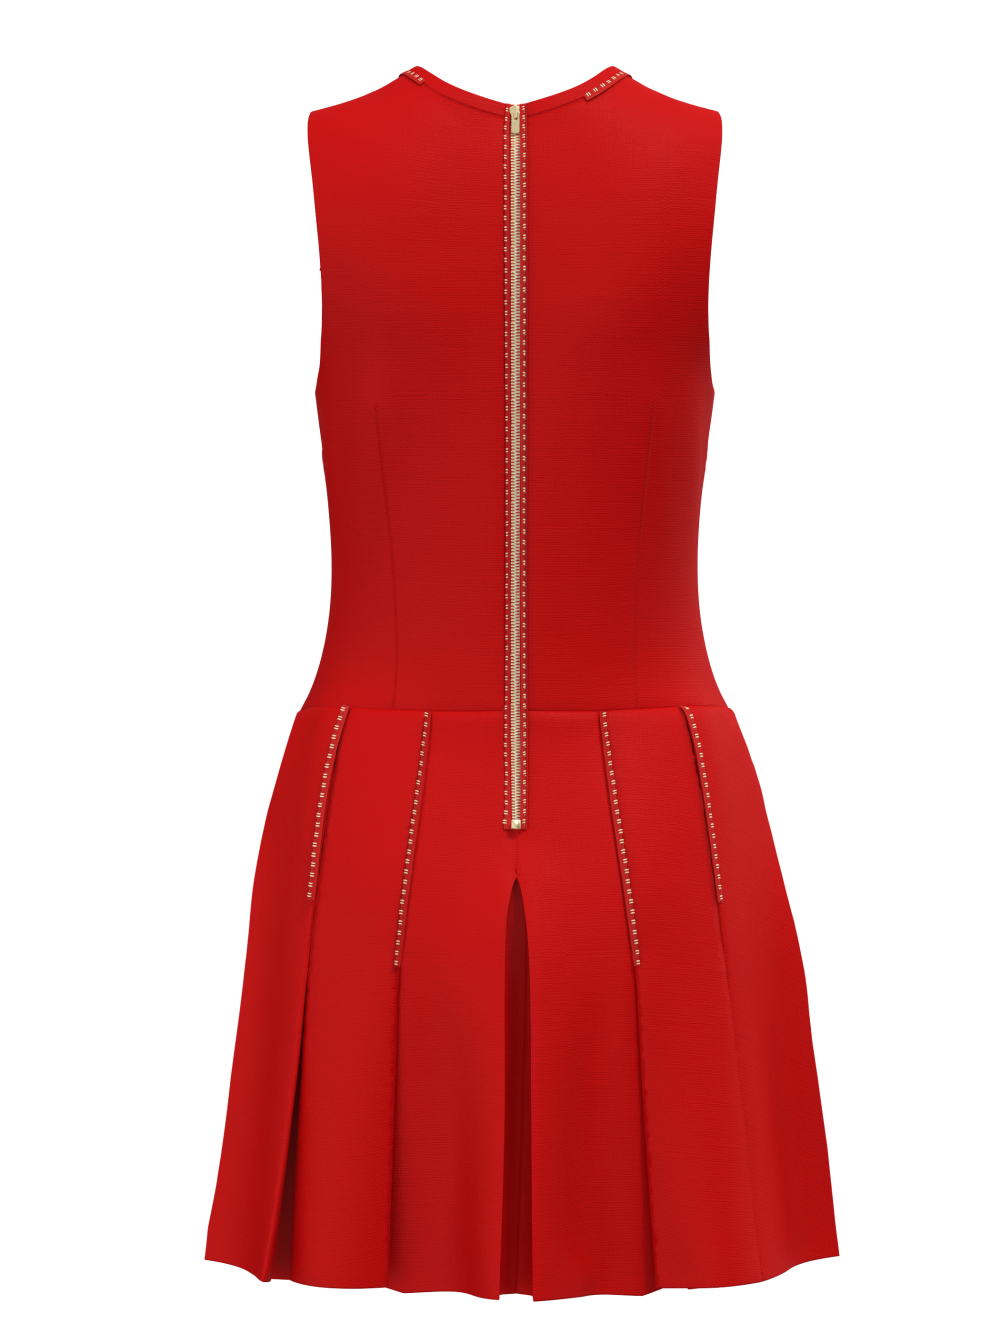 Celebrity Golf Dress I Women's Golf Apparel I TARZI SPORT